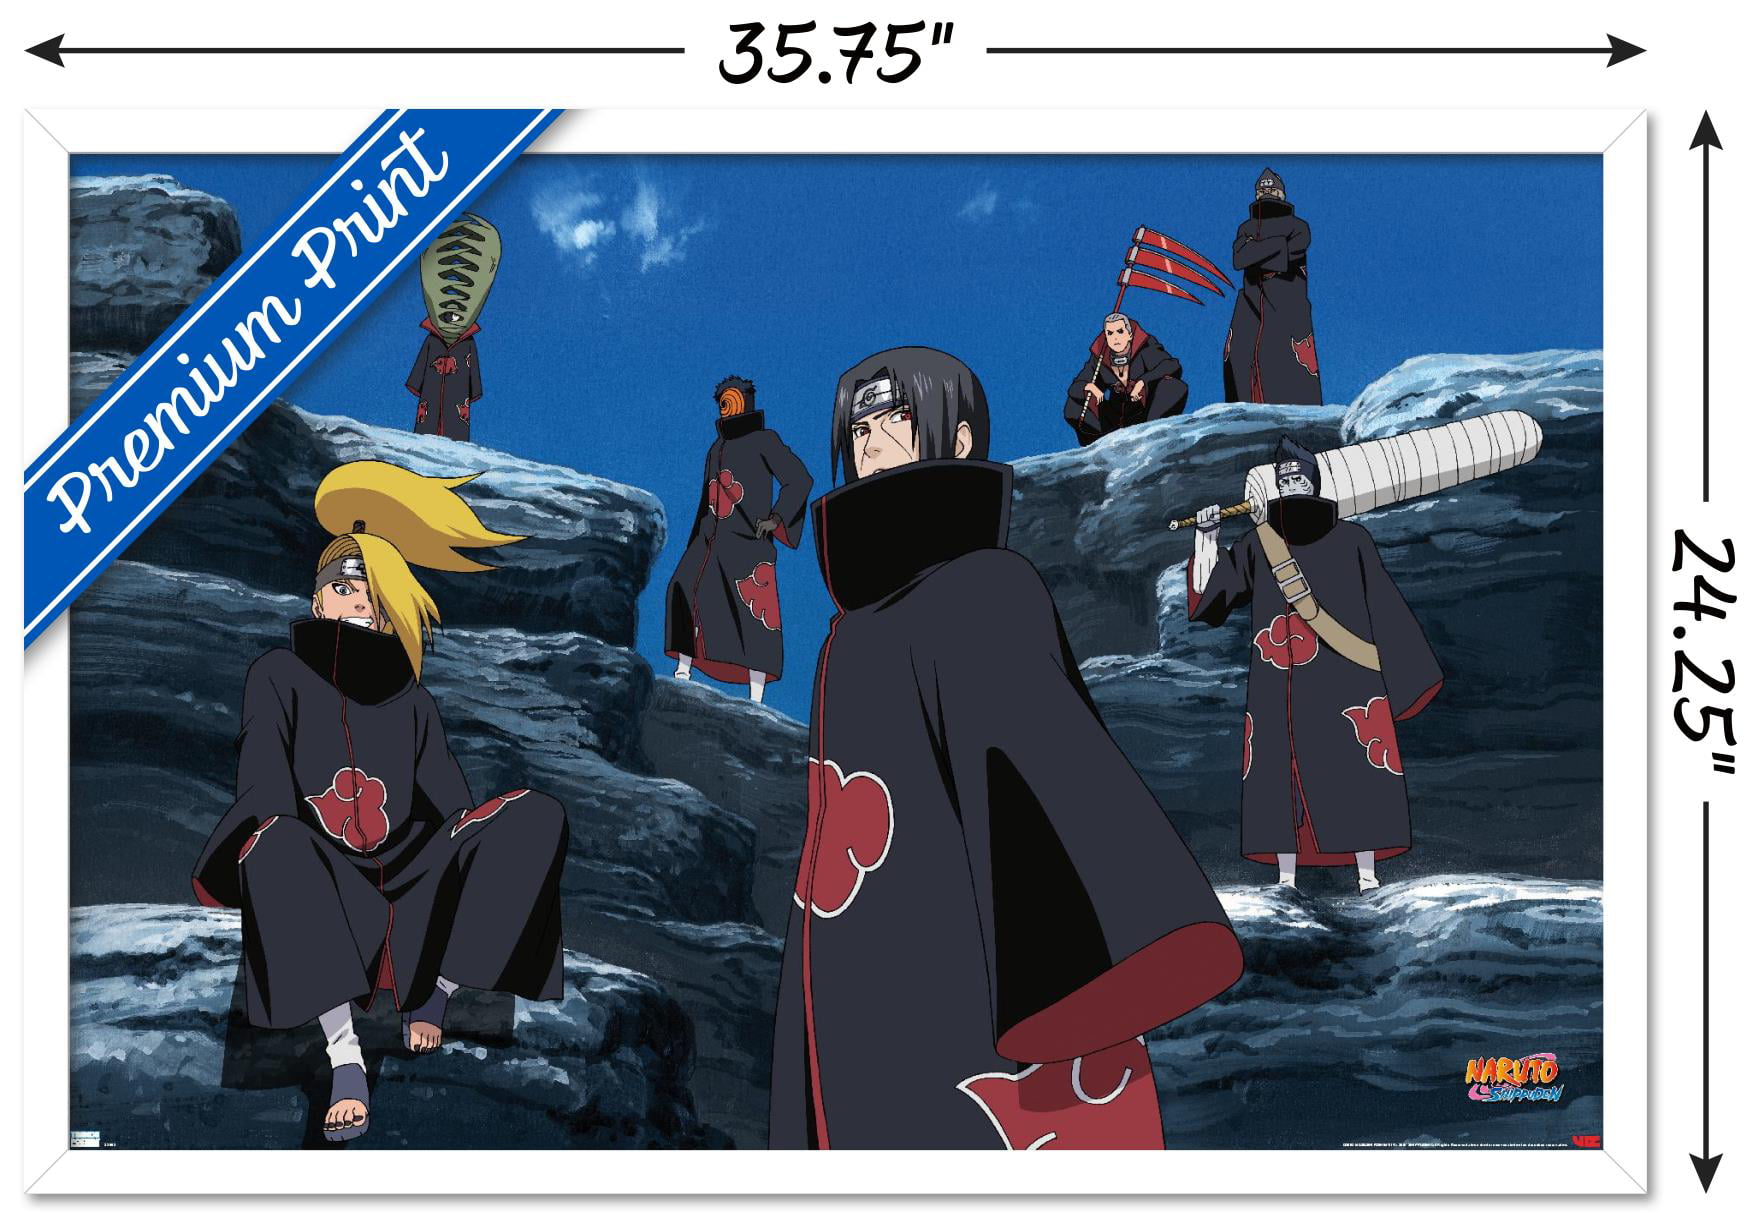 Curiosidades sobre os membros da Akatsuki - Naruto